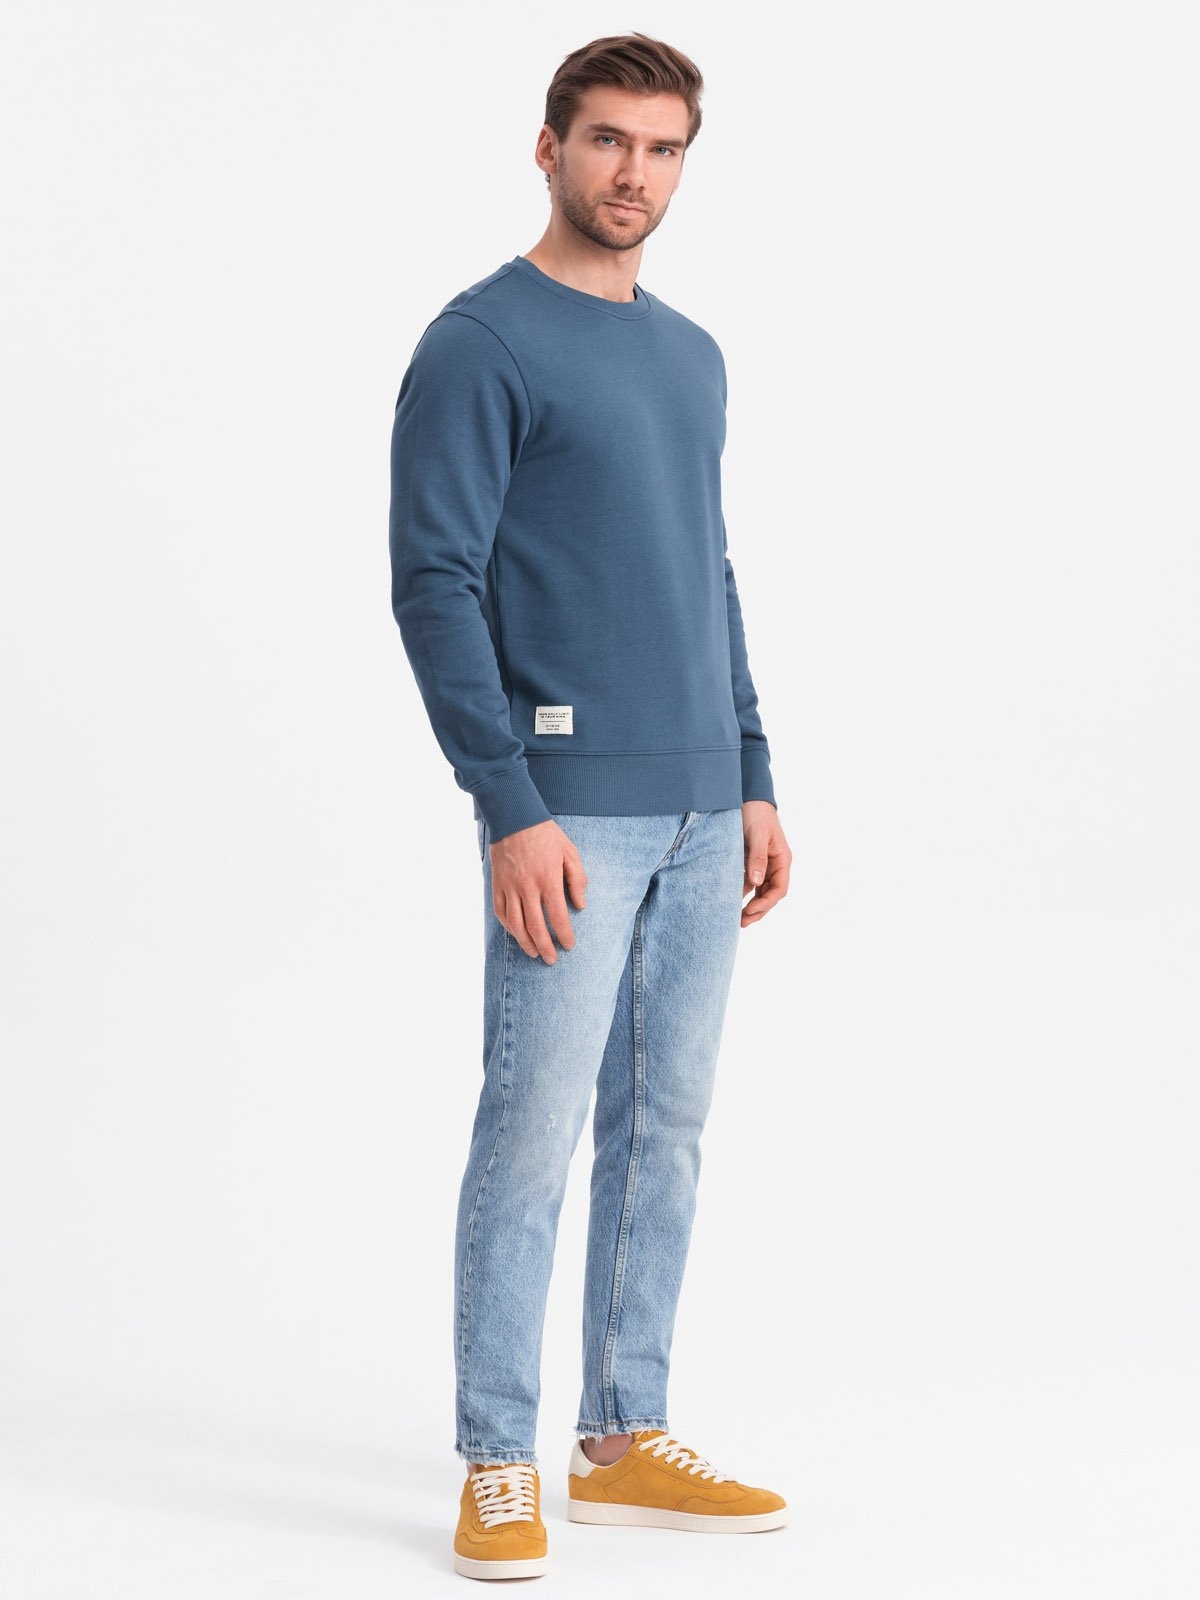 Ombre Men's BASIC sweatshirt with round neckline - navy blue